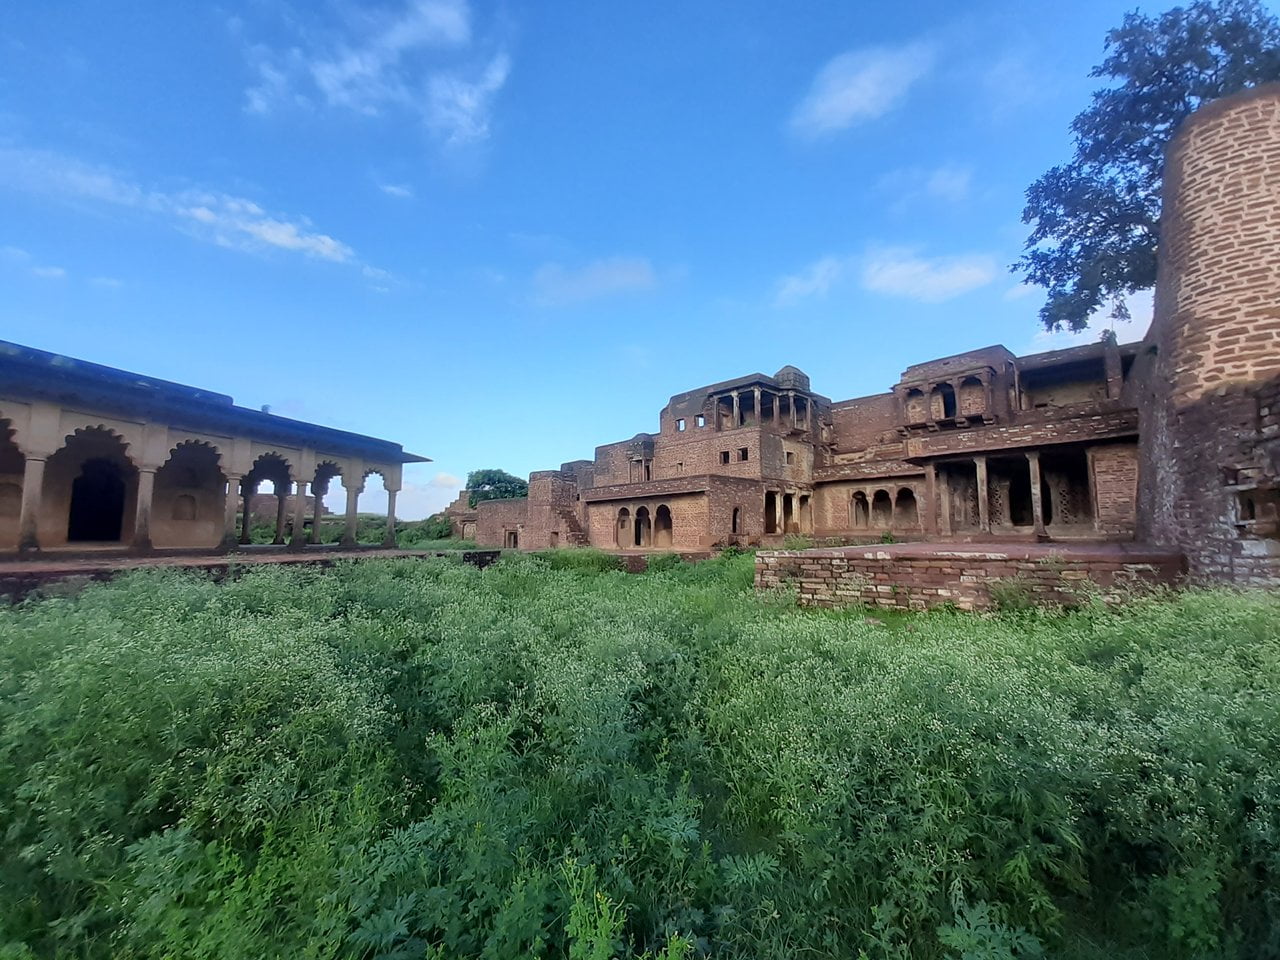 Narwar fort of Madhya Pradesh settled among a few hundred